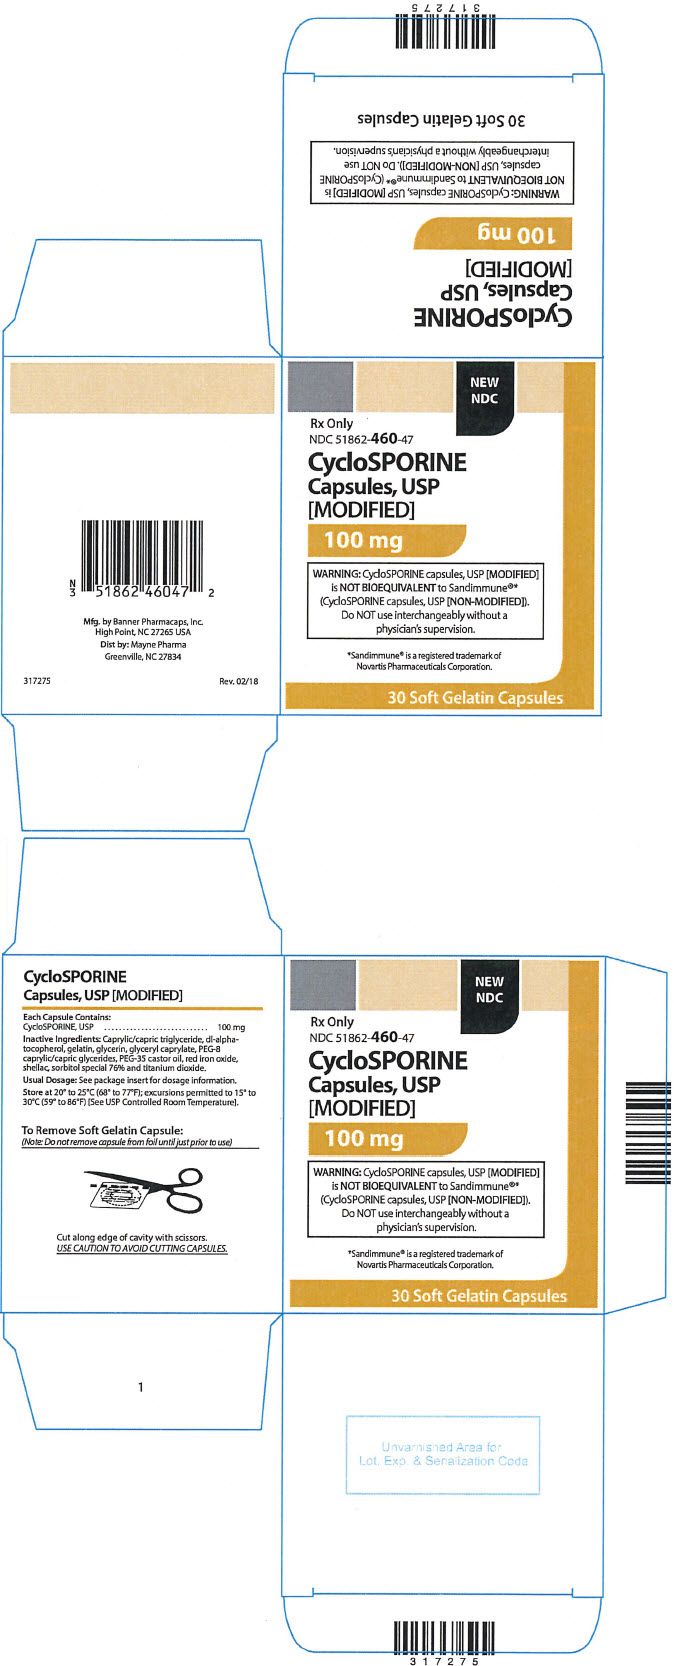 PRINCIPAL DISPLAY PANEL - 100 mg Capsule Blister Pack Box